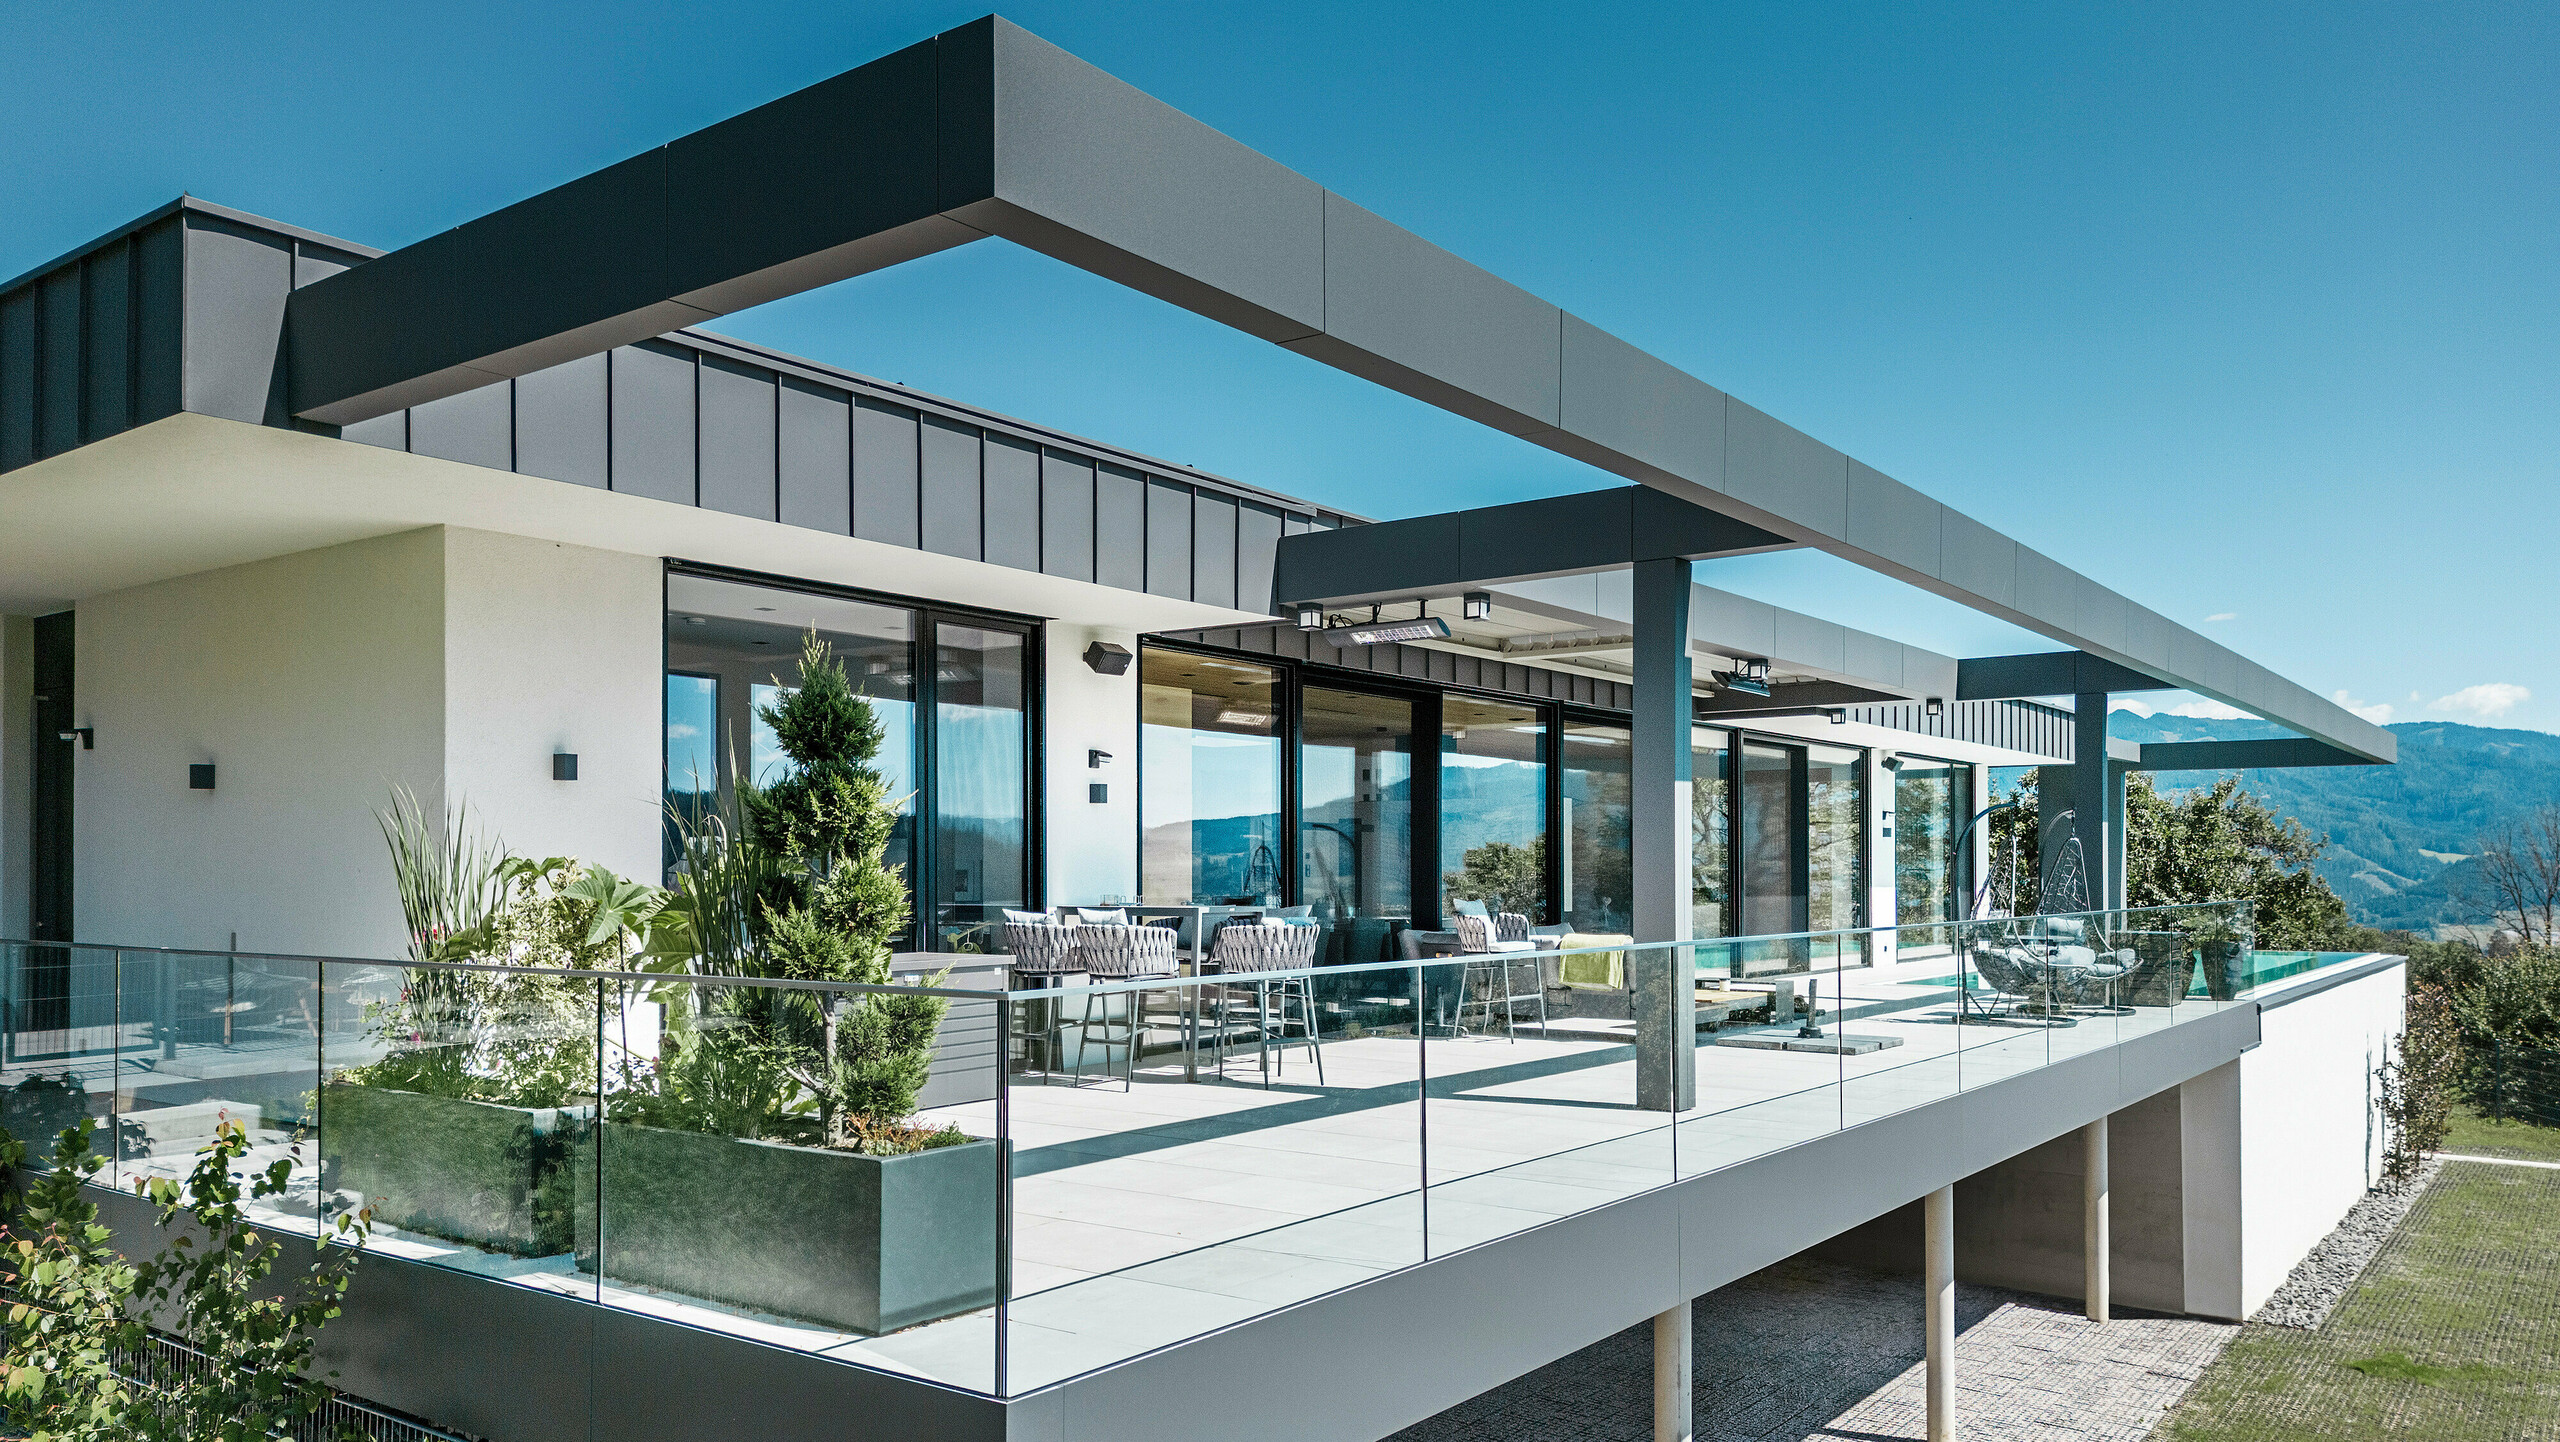 Luxusná terasa rodinného domu v rakúskom Pogieri s elegantnými strešnými a fasádnymi systémami od PREFA. Kombináciou PREFALZ a PREFABOND v tmavošedej farbe vzniká moderný a sofistikovaný dizajn. Priestranná terasa ponúka úchvatný výhľad a je vybavená skleneným zábradlím, ktoré vytvára otvorenú a príjemnú atmosféru. Čiastočne zastrešená vonkajšia plocha vám umožní vychutnať si krásu okolitej prírody a je ideálna na oddych a spoločenské stretnutia.